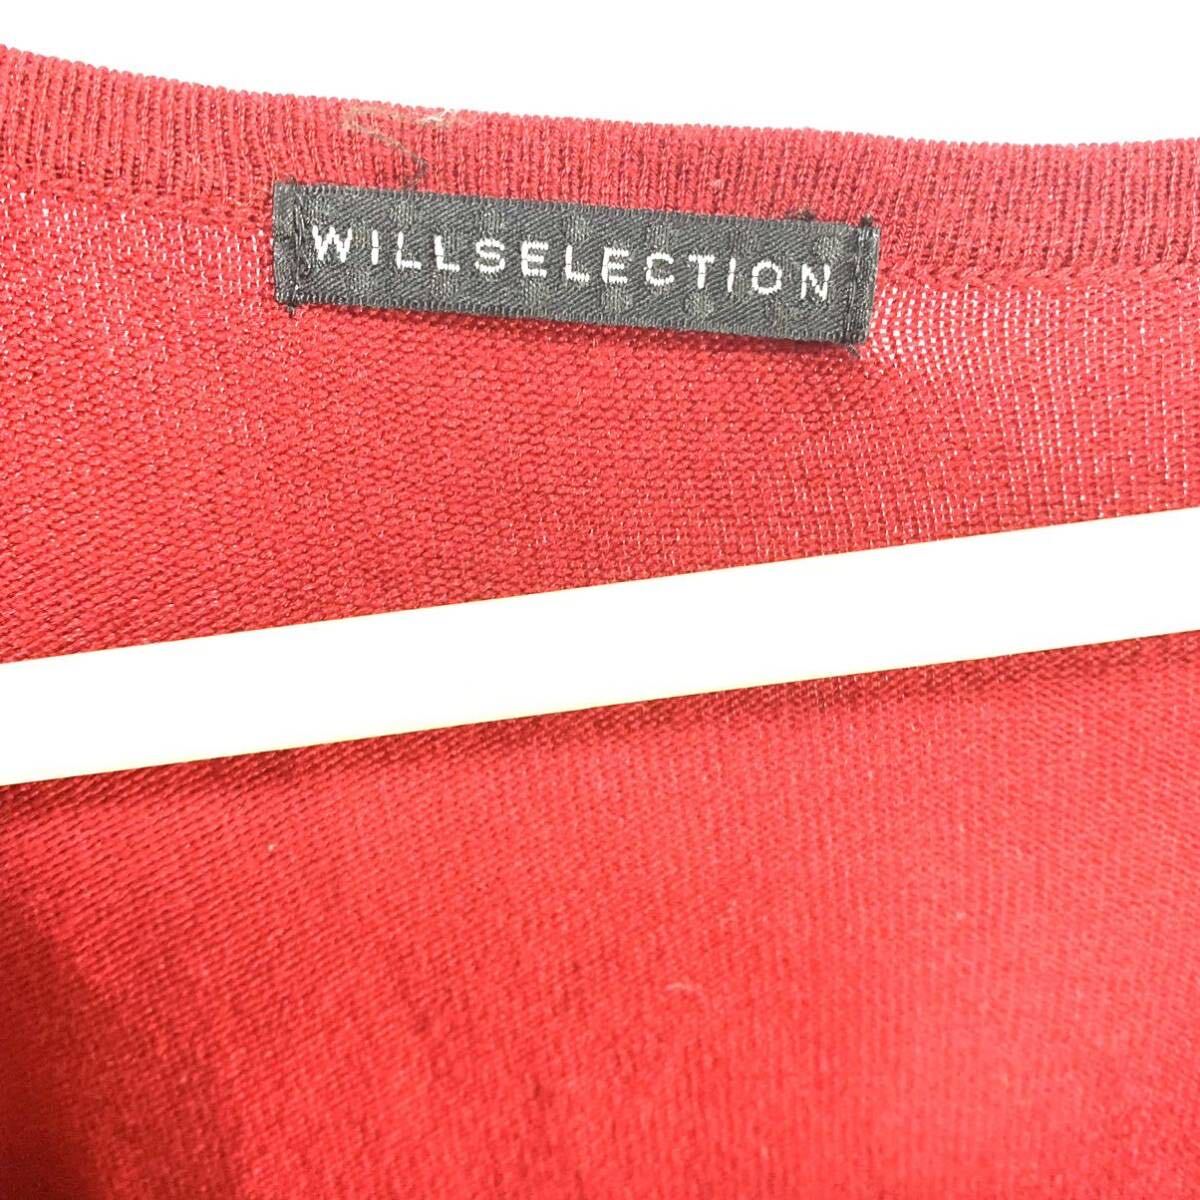 日本規格 WILL SELECTION アクリル サマーニット 半袖 セーター 赤 レディース_画像3